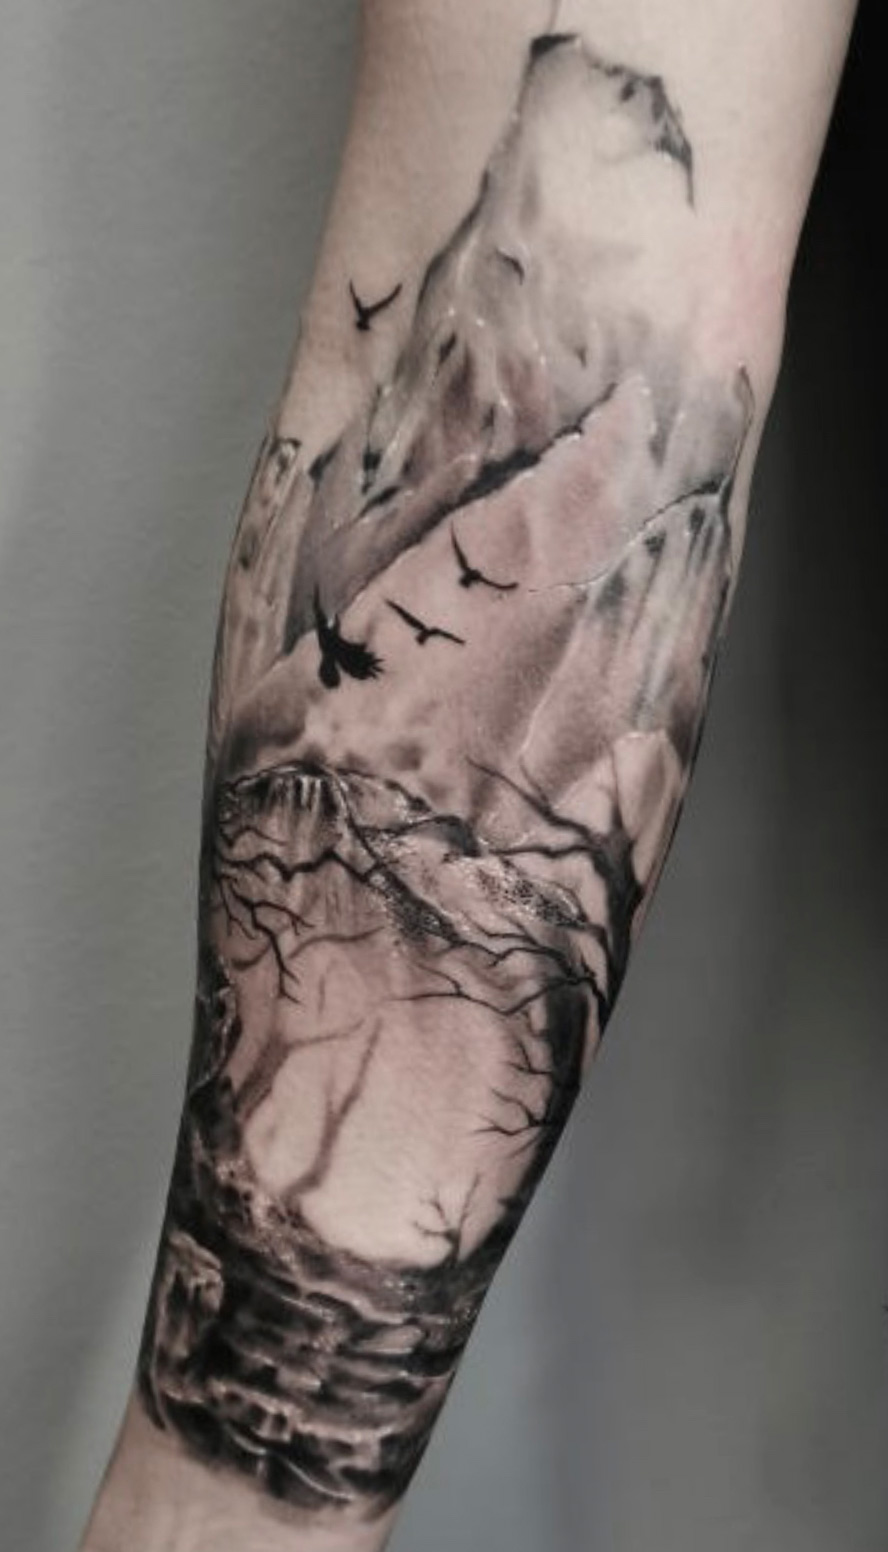 Tattoo Anansi Studio München Munich Haidhausen Ell forearm landscape dark forest crows birds trees fantasy best black and grey